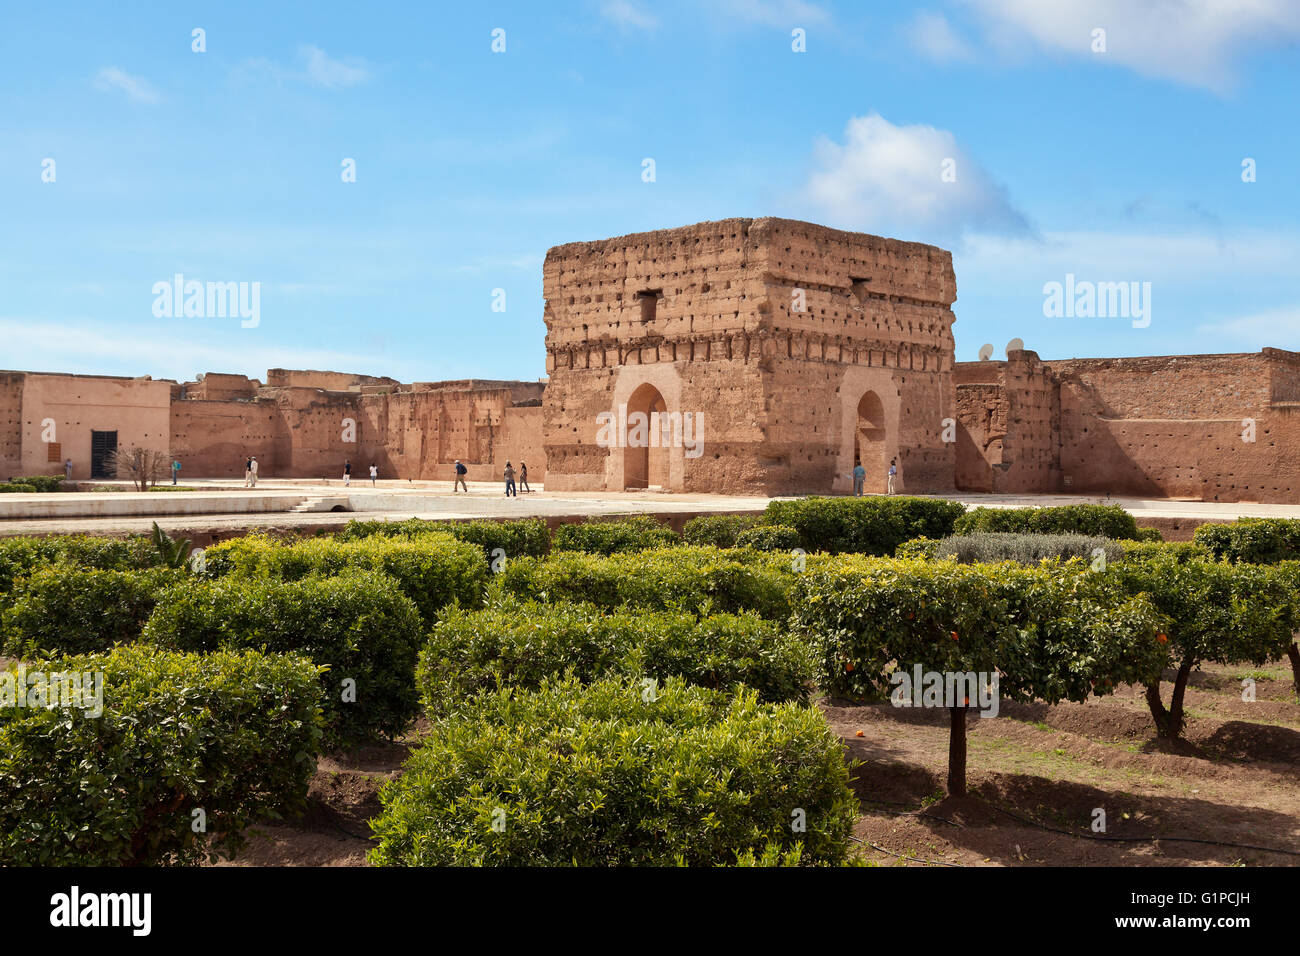 El Badi Palace ruins, Marrakesh, Morocco Stock Photo